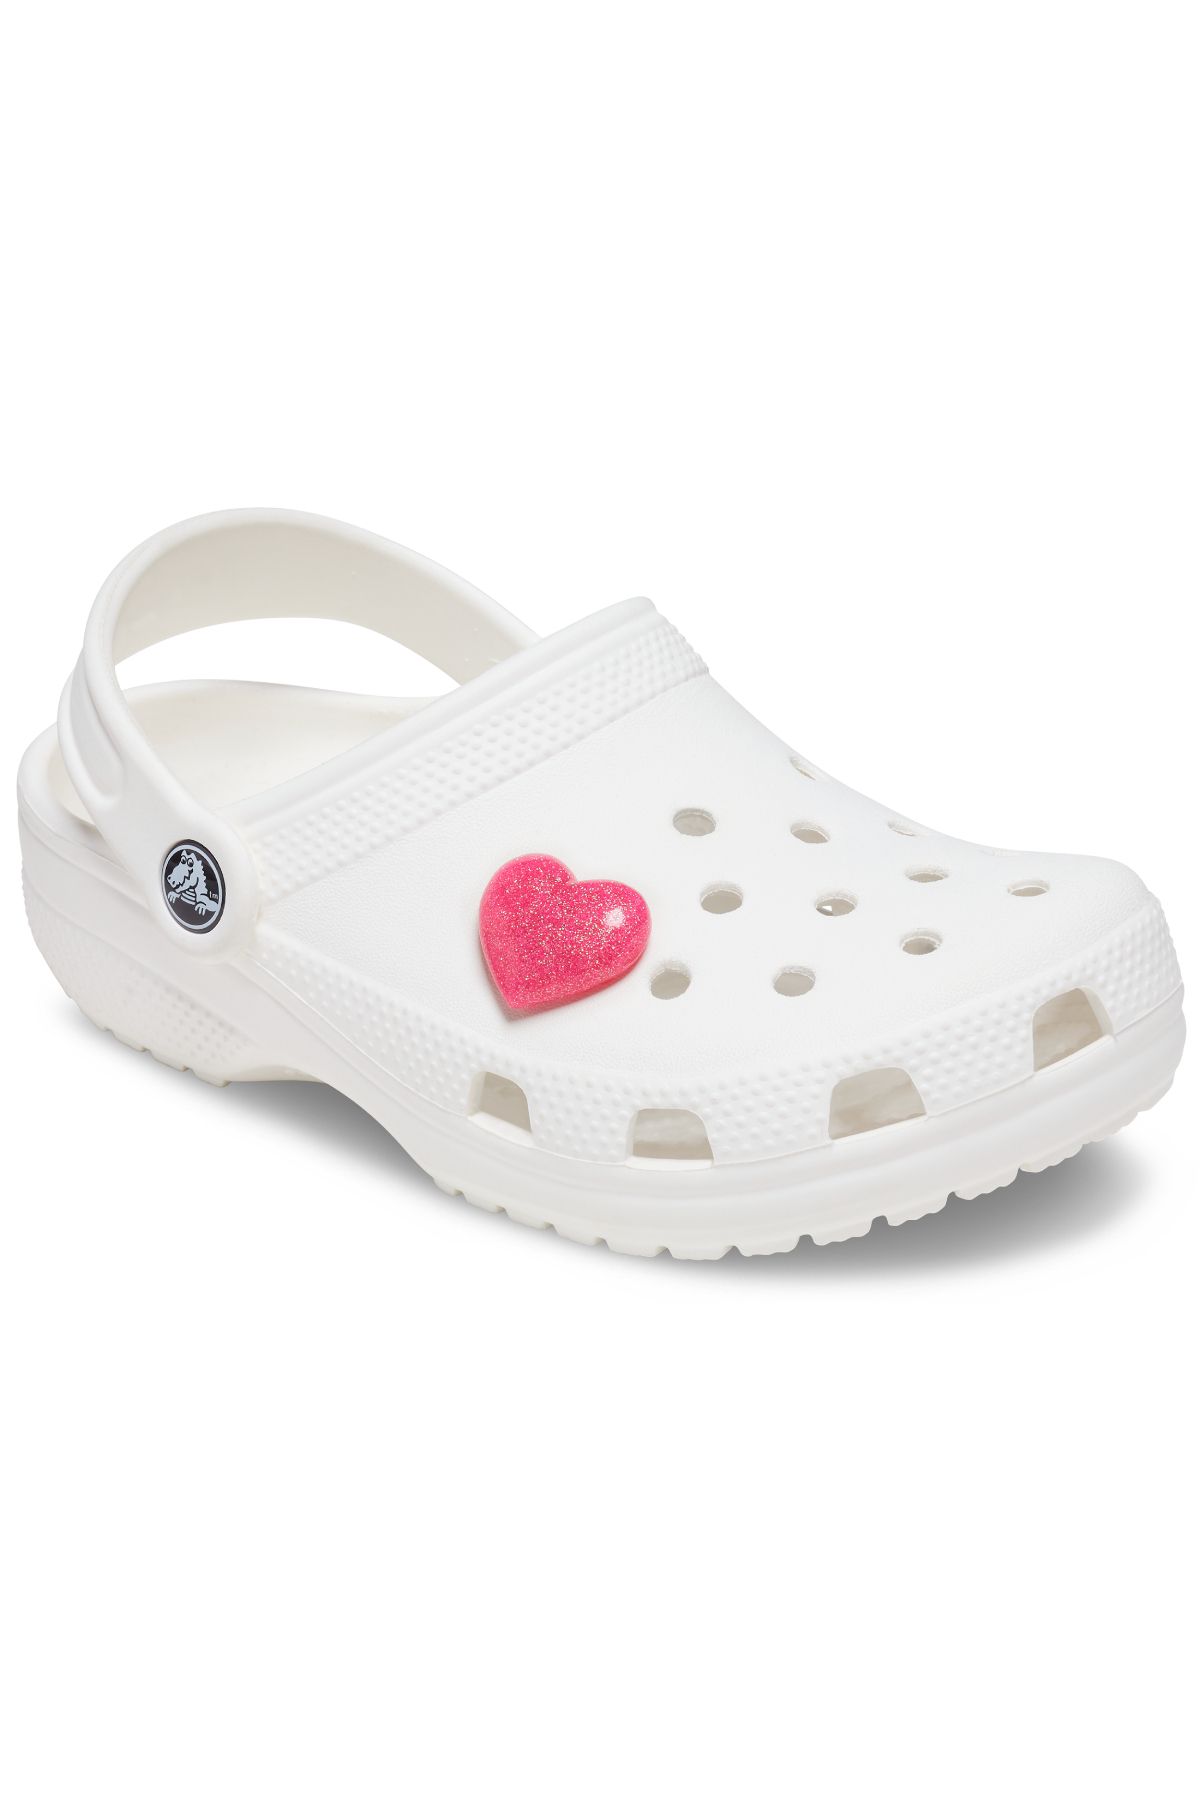 Crocs 10009905 دمپایی کفش Jibbitz تزئین صورتی 3D Glitter Heart